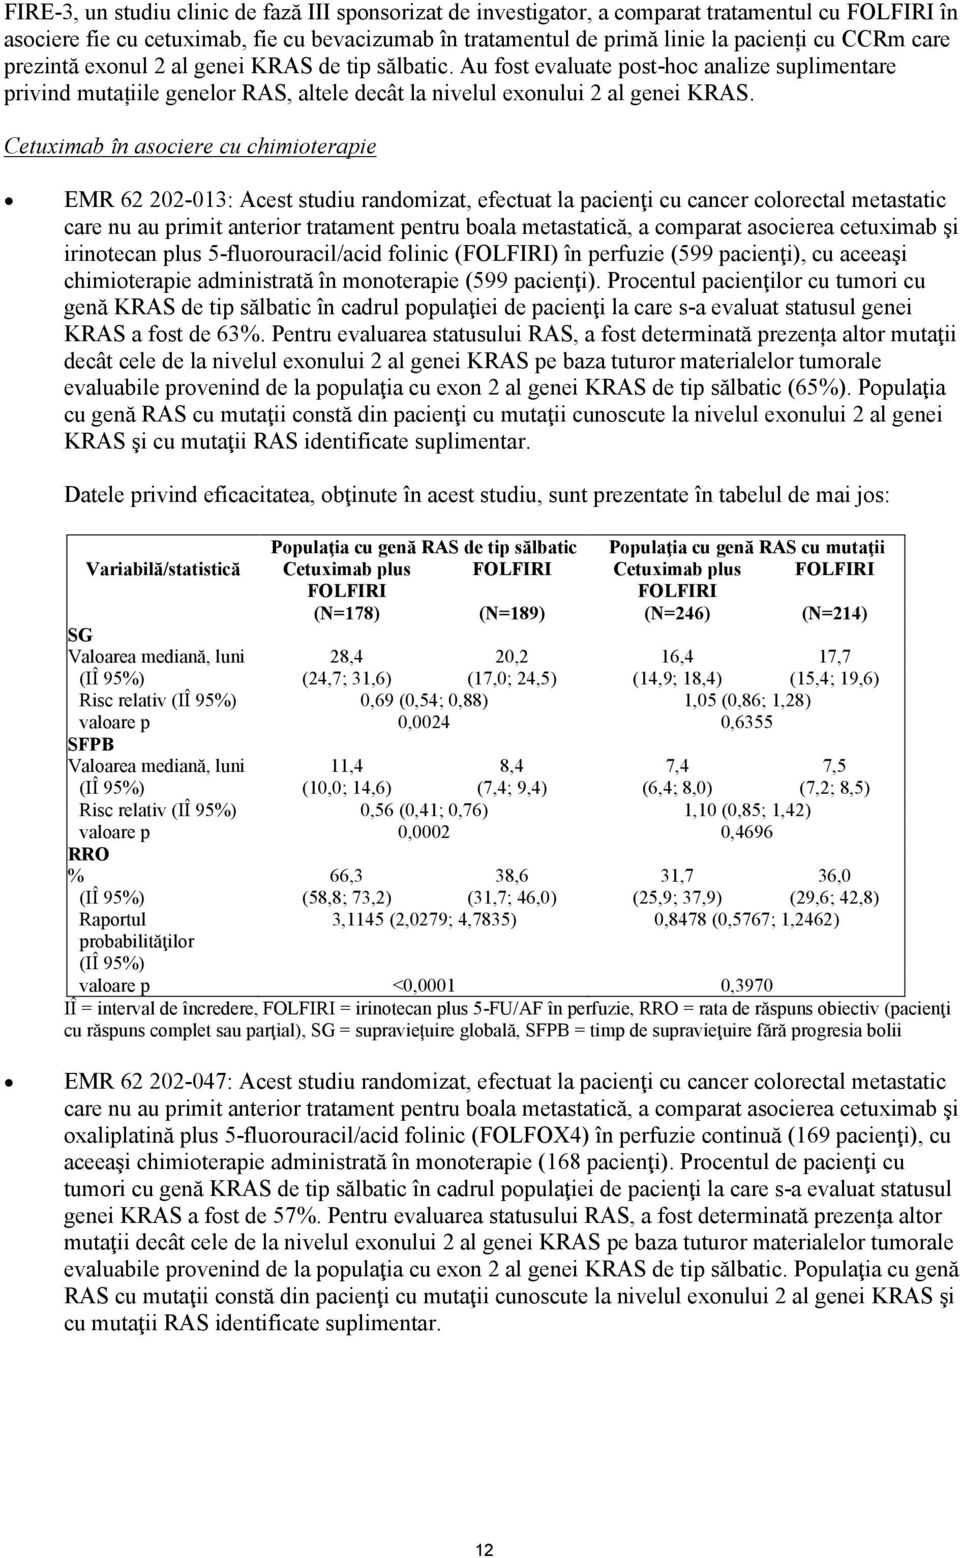 Cetuximab în asociere cu chimioterapie EMR 62 202-013: Acest studiu randomizat, efectuat la pacienţi cu cancer colorectal metastatic care nu au primit anterior tratament pentru boala metastatică, a